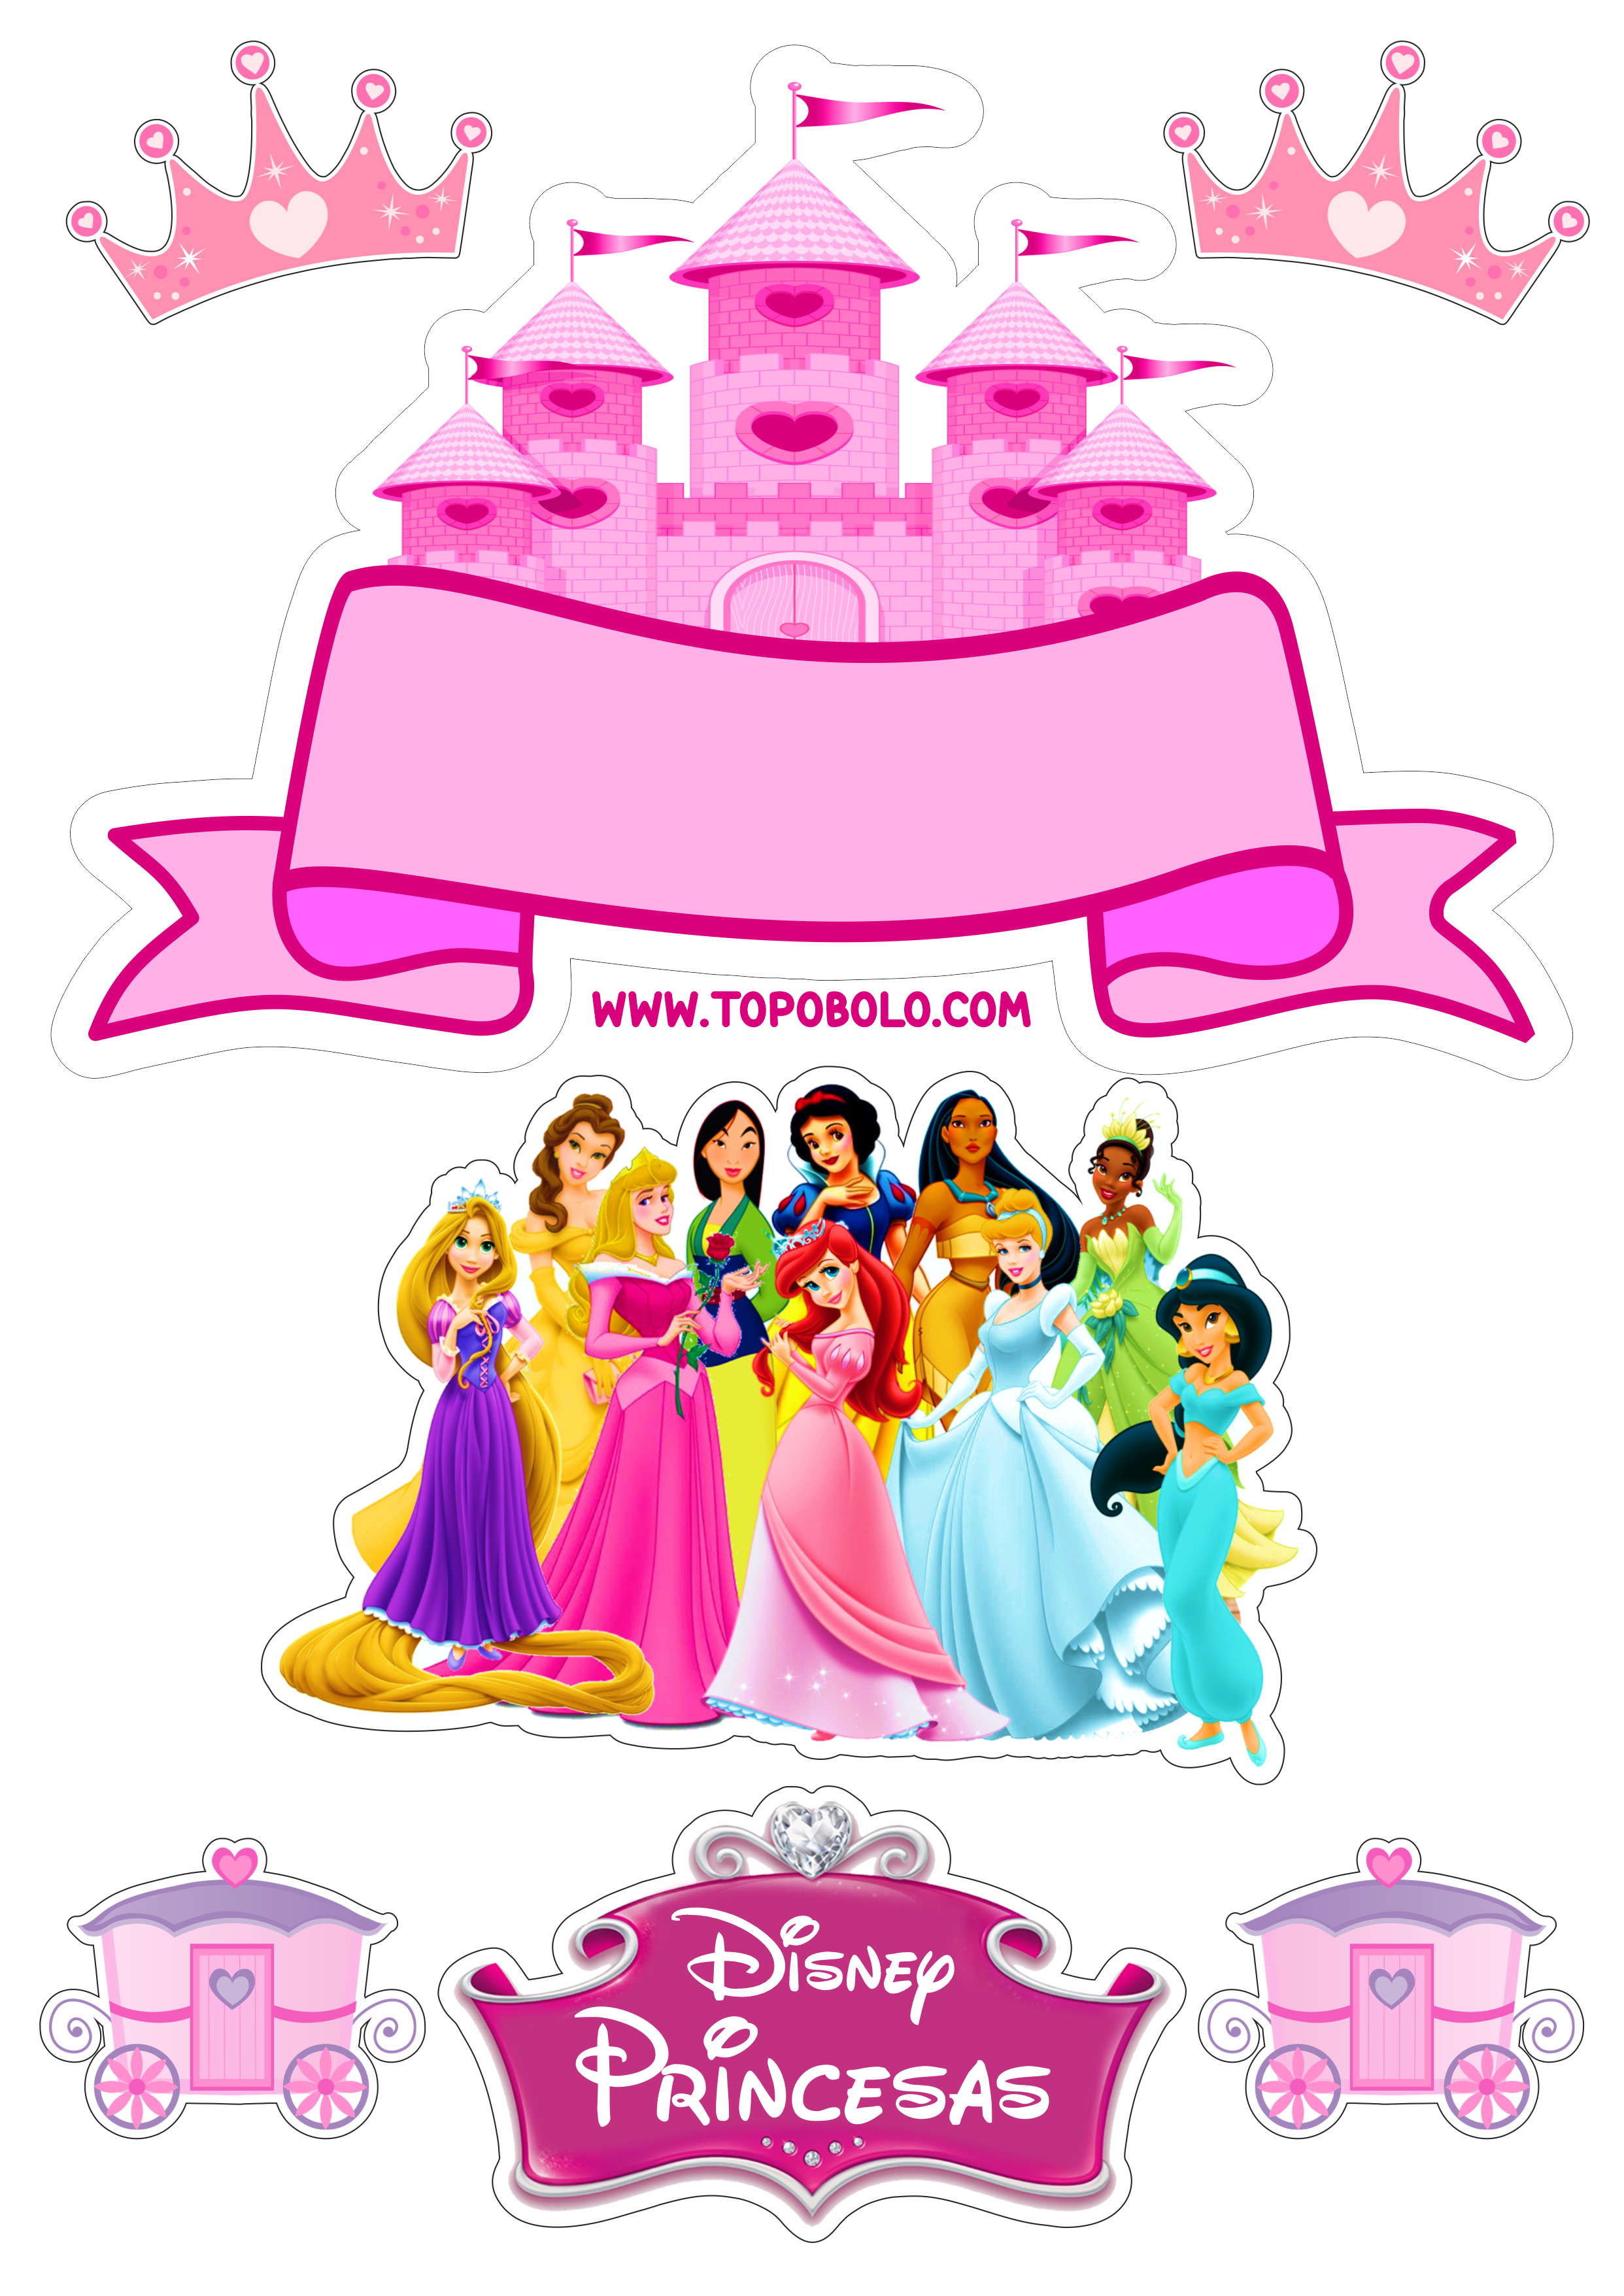 Topo de bolo princesas disney baby decoração de festa infantil pronto para imprimir png